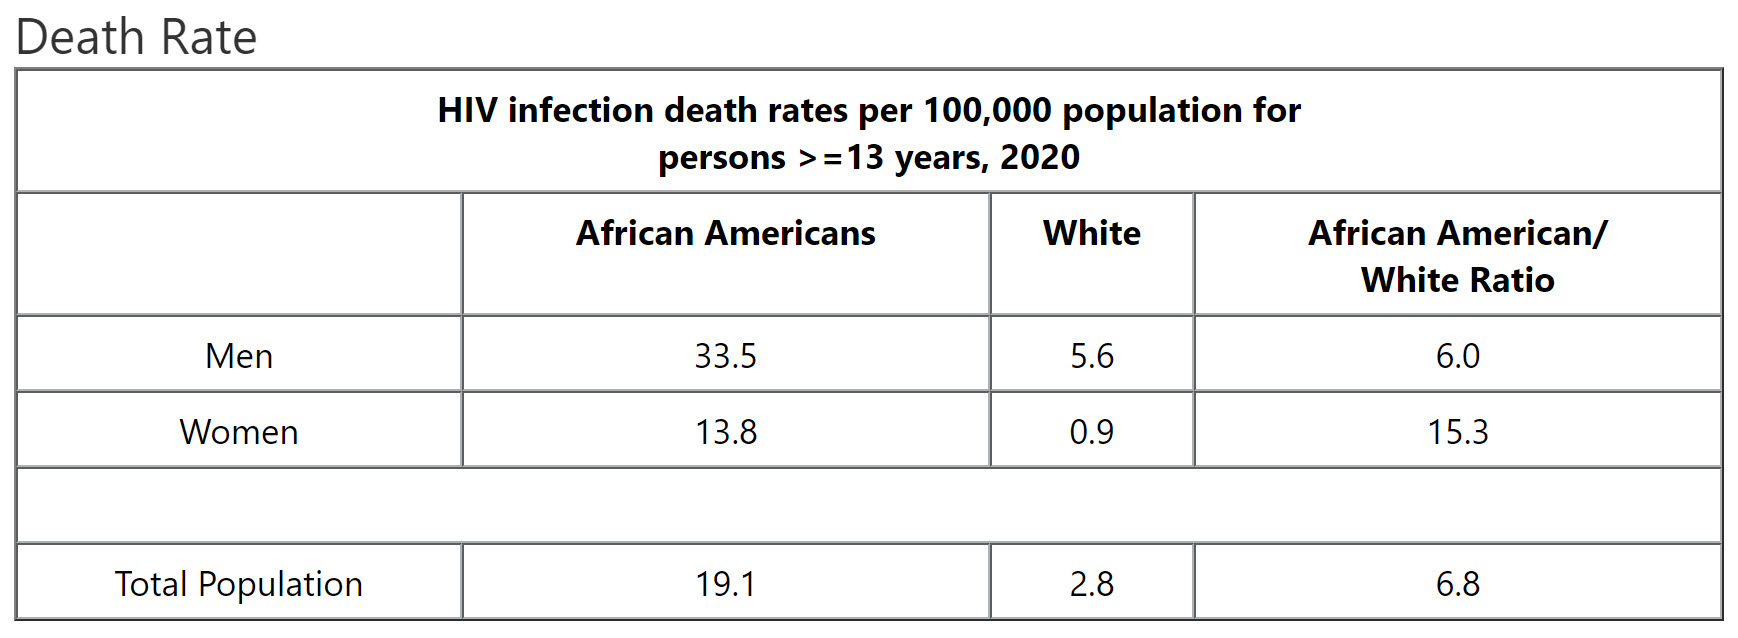 AIDS Death Rates, 2020